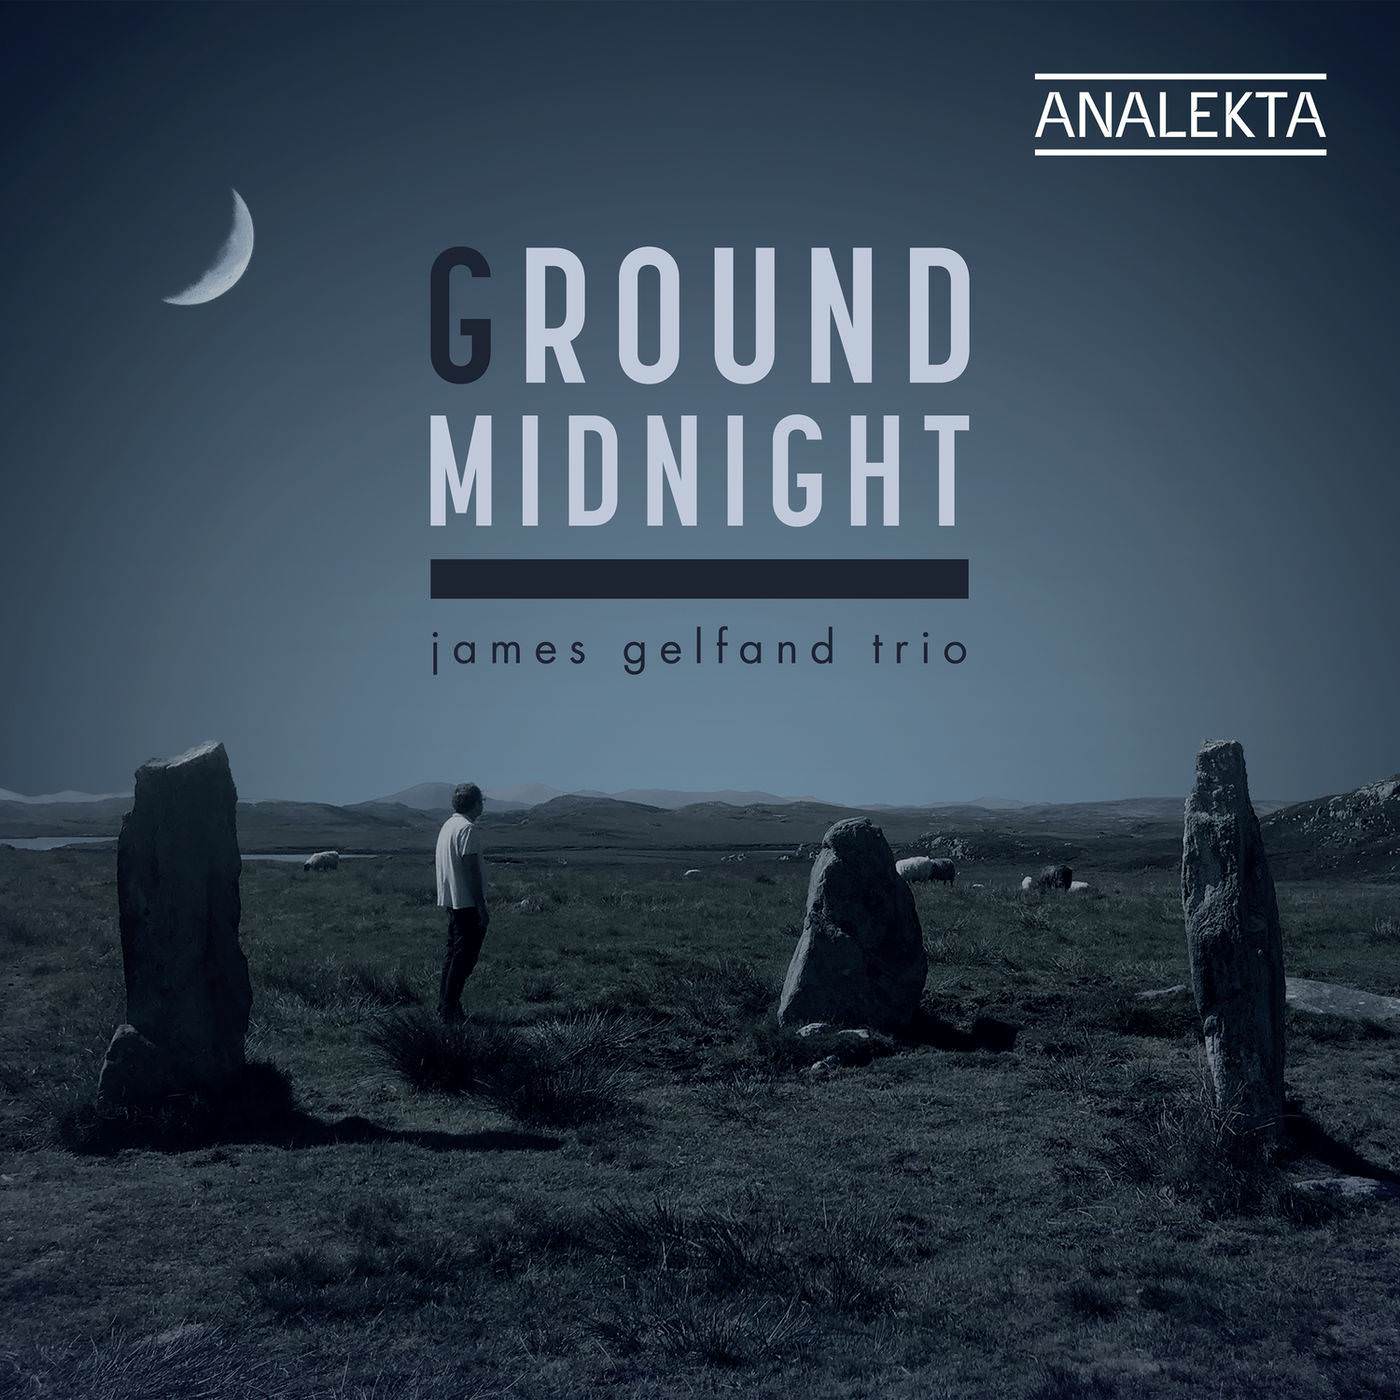 James Gelfand Trio - Ground Midnight (2018) [FLAC 24bit/96kHz]